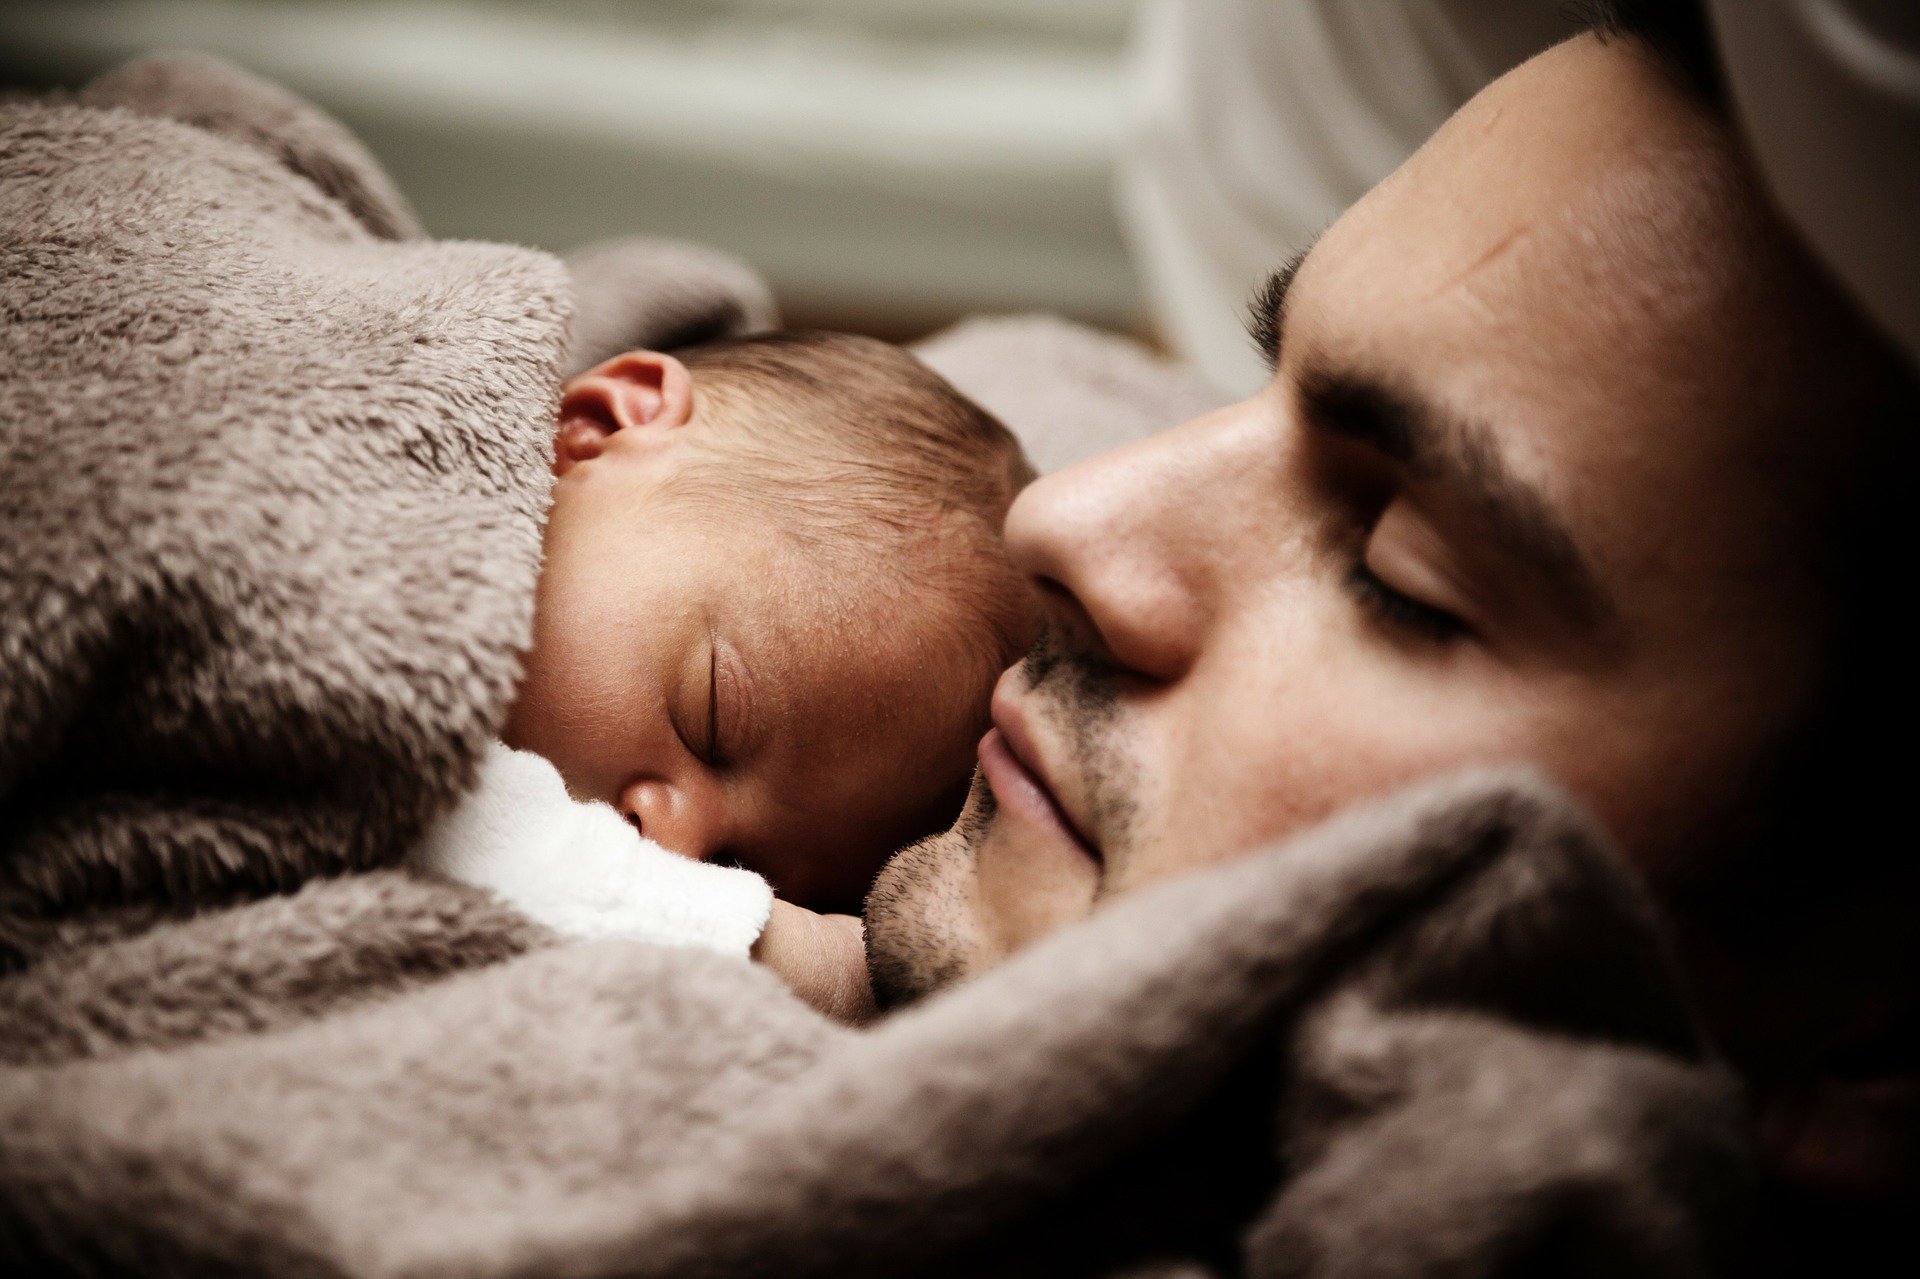 Tatínek si poradil s pláčem svého novorozeného syna velice pěkným a nevšedním způsobem